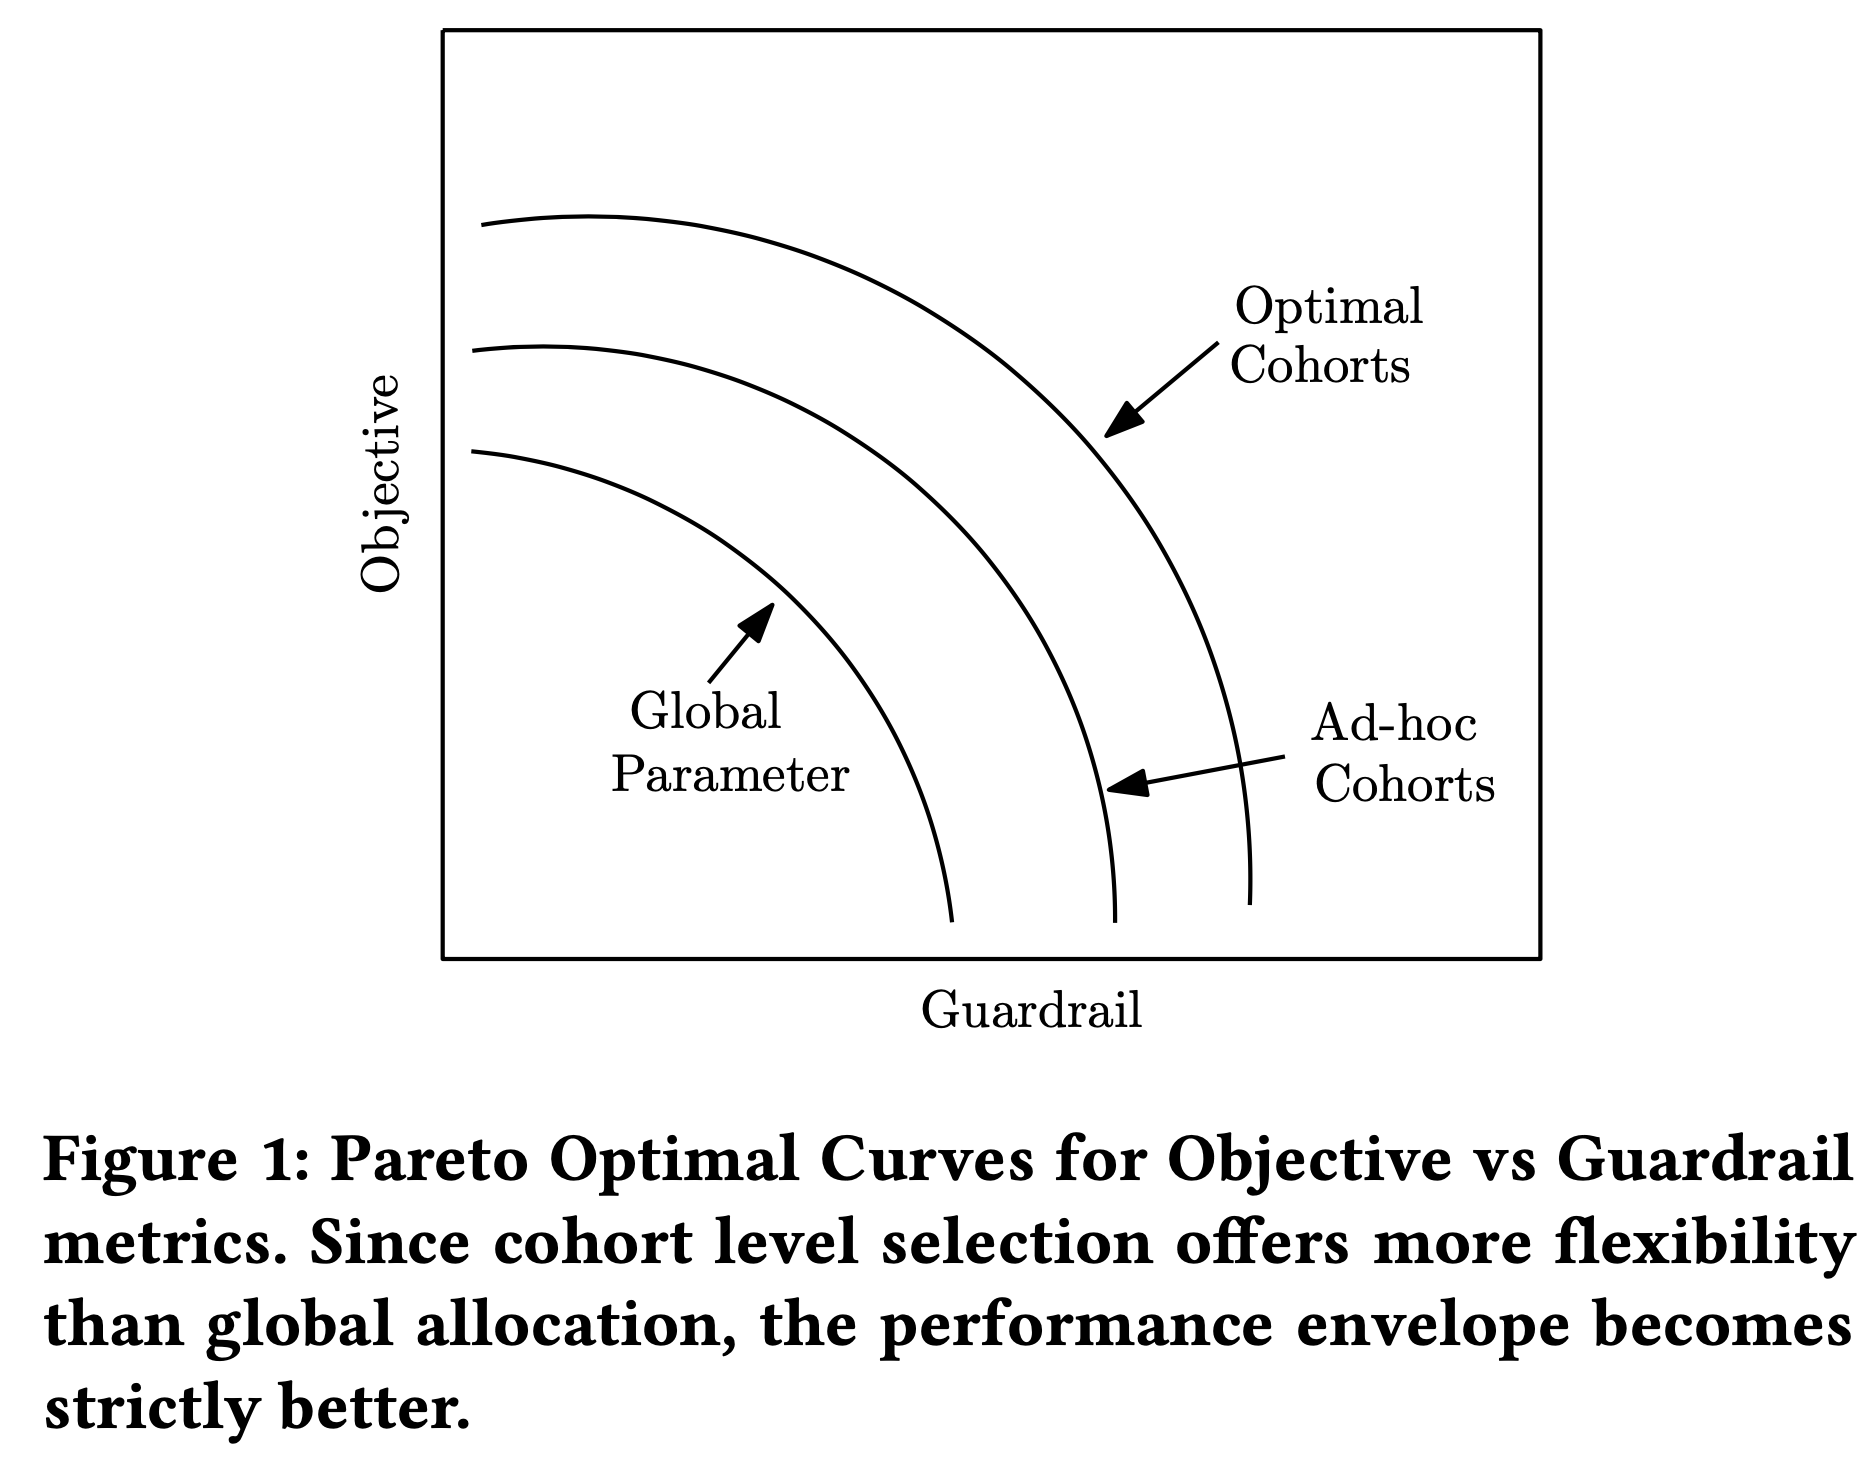 Pareto Optimal Curves for Objective vs Guardrail metrics